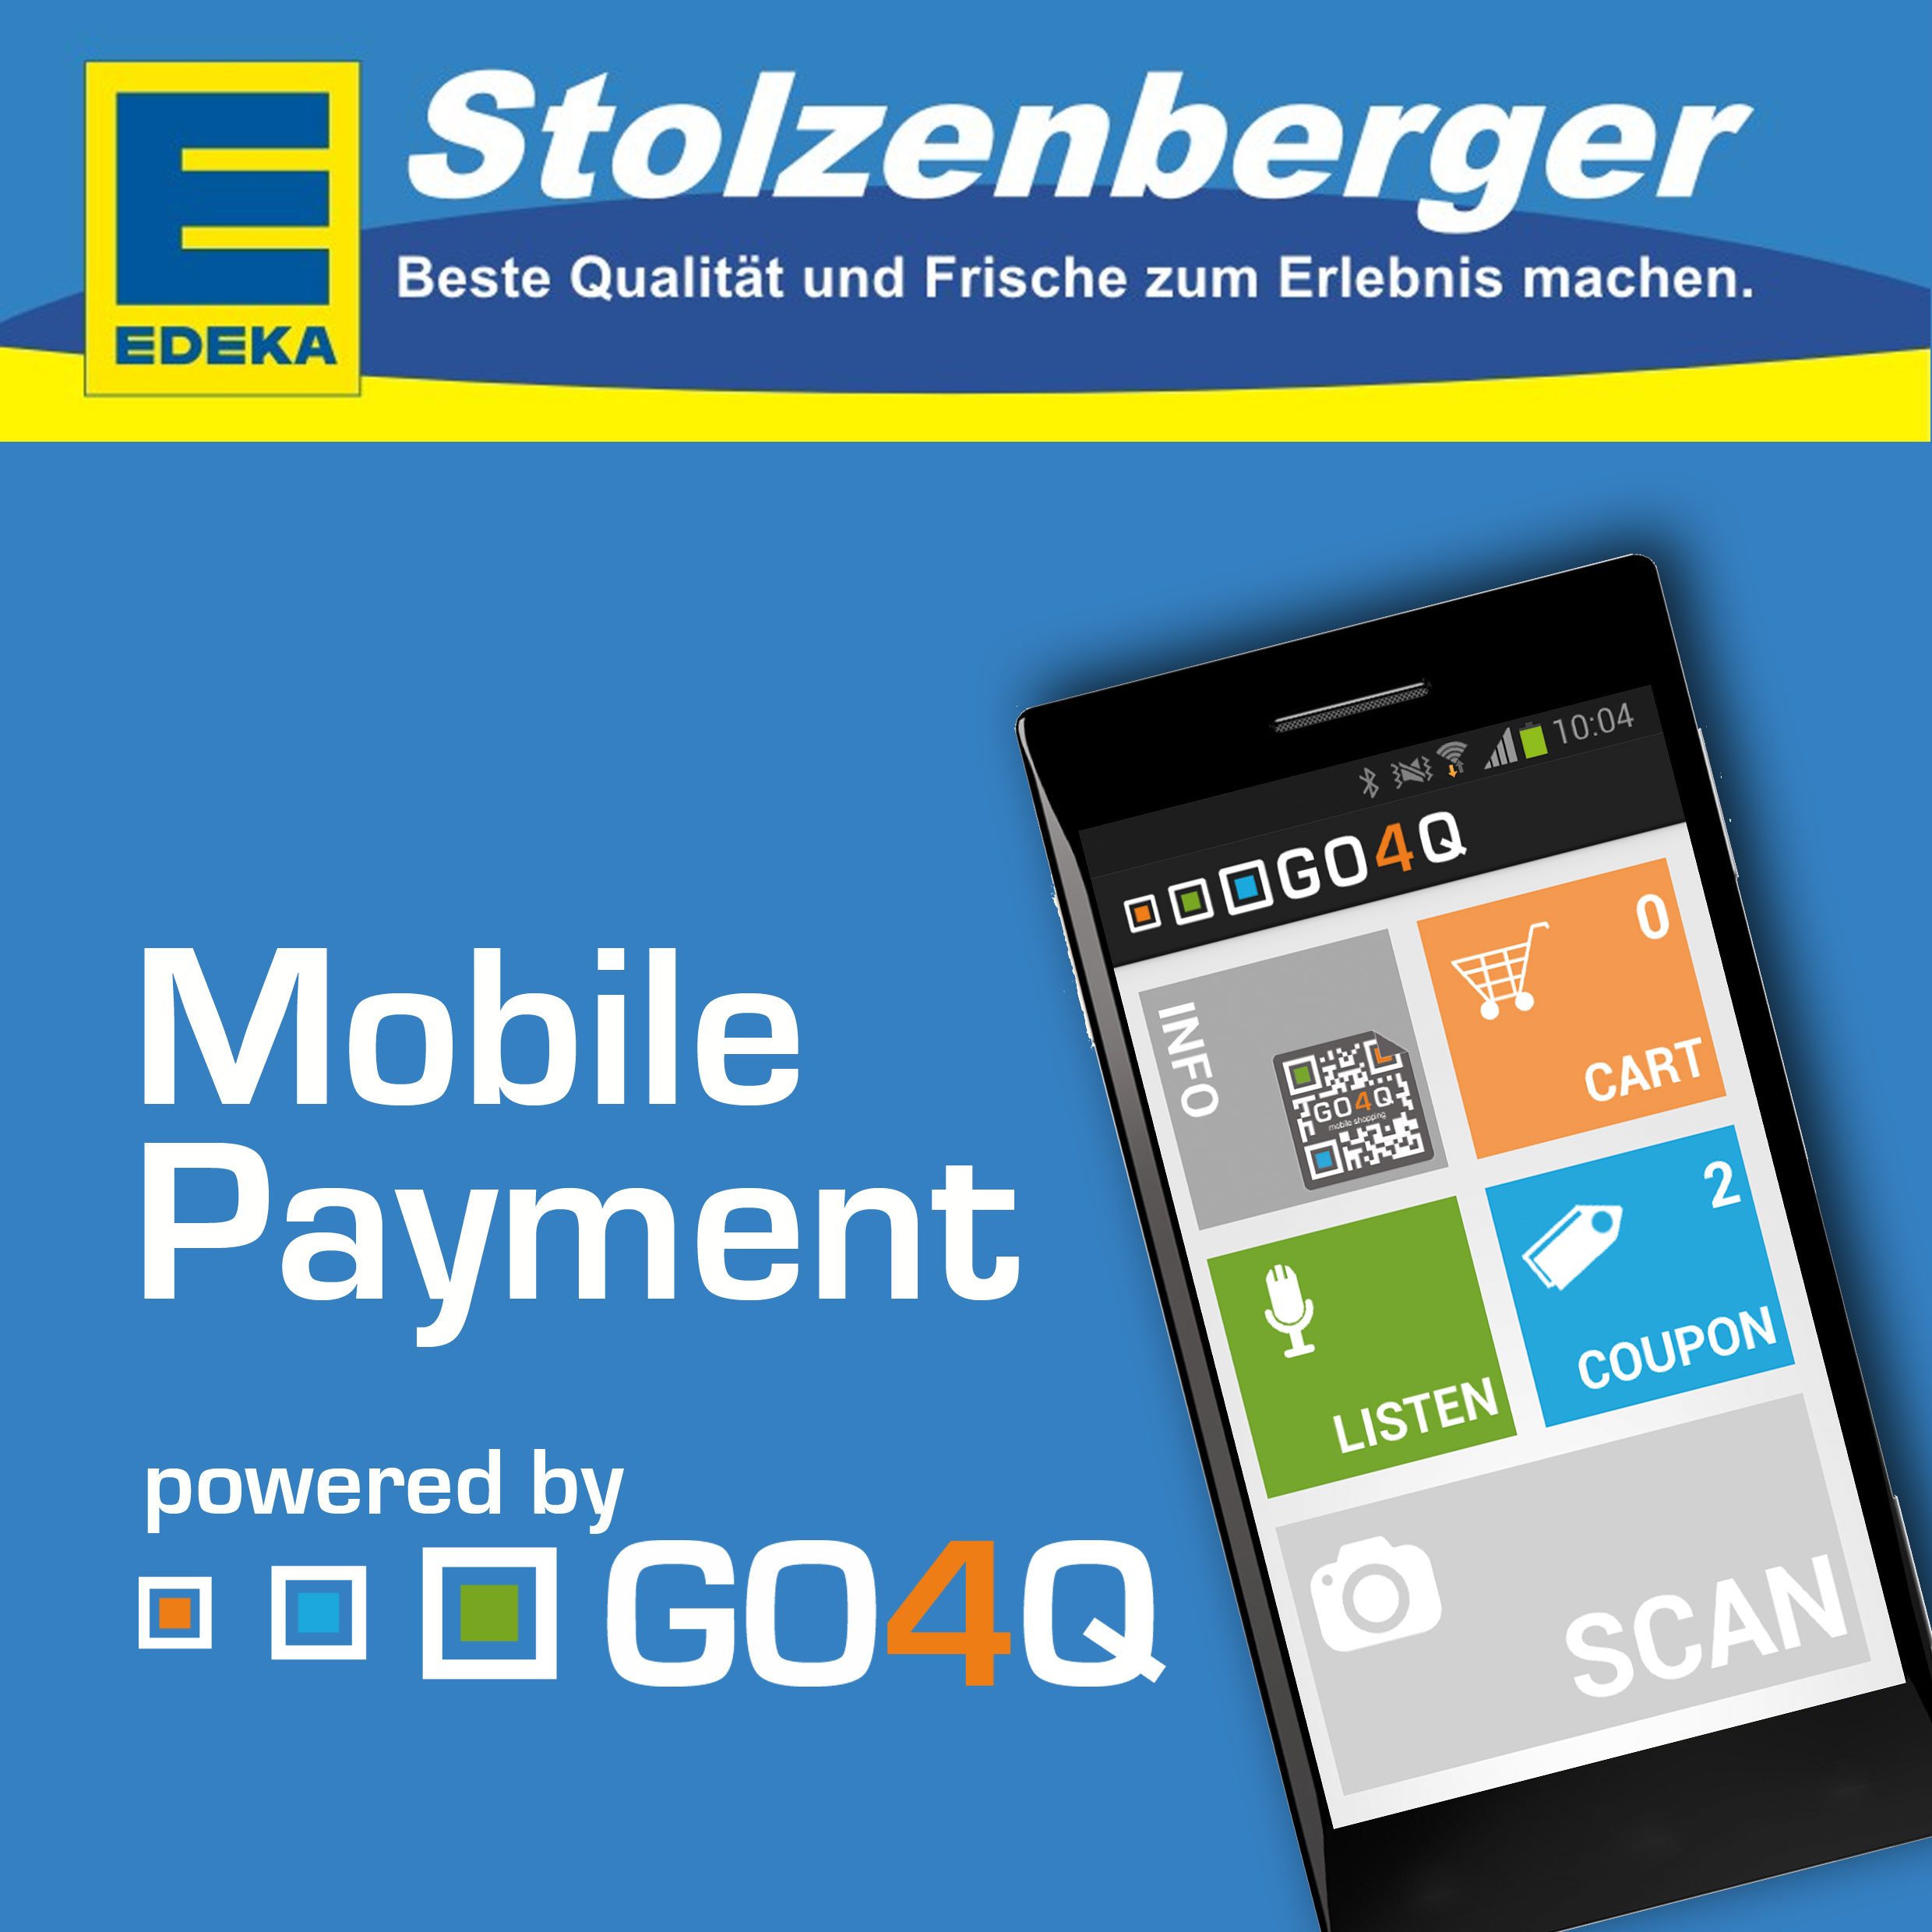 Handy News @ Handy-Info-123.de | Mobile Payment mit GO4Q jetzt auch bei EDEKA Stolzenberger